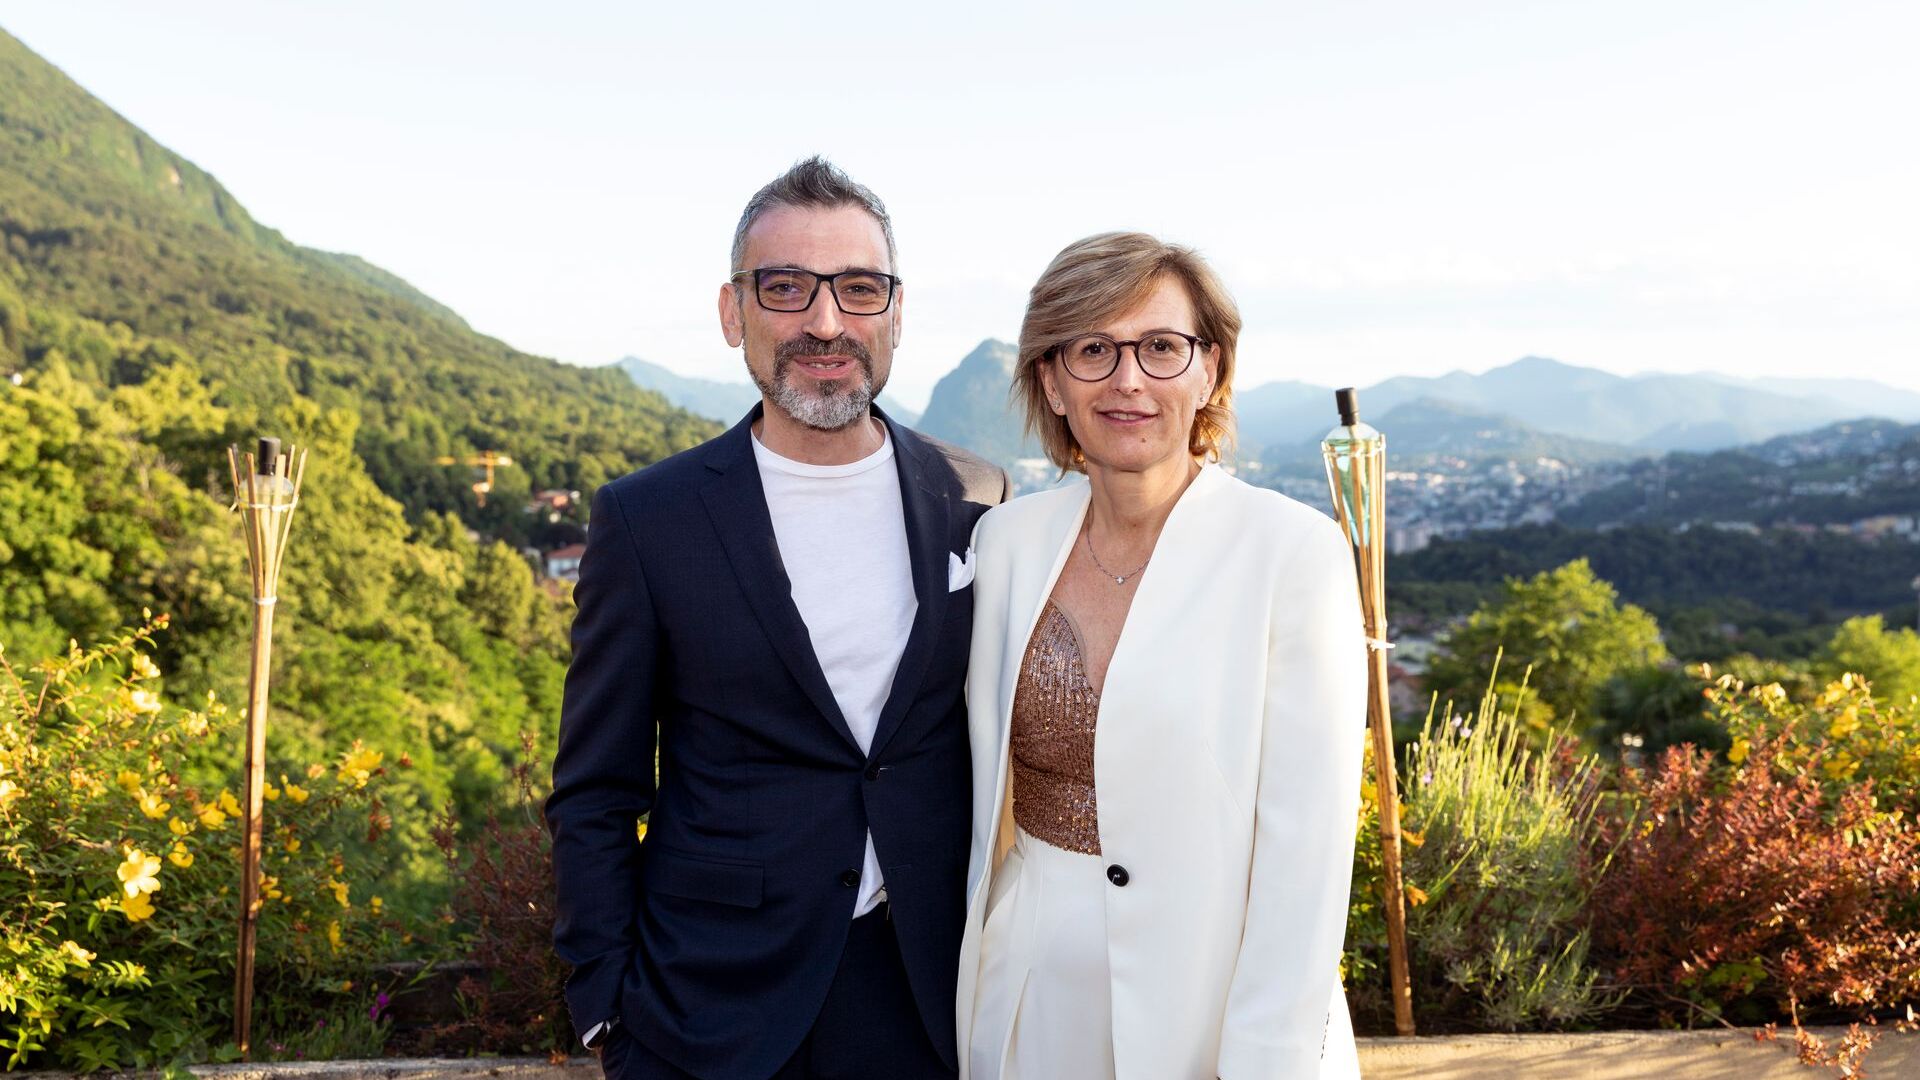 Кристина Джотто, президент және Лука Мауриелло, вице-президент, ated-ICT Ticino компаниясының жаңа топ-менеджментін бейнелейді.